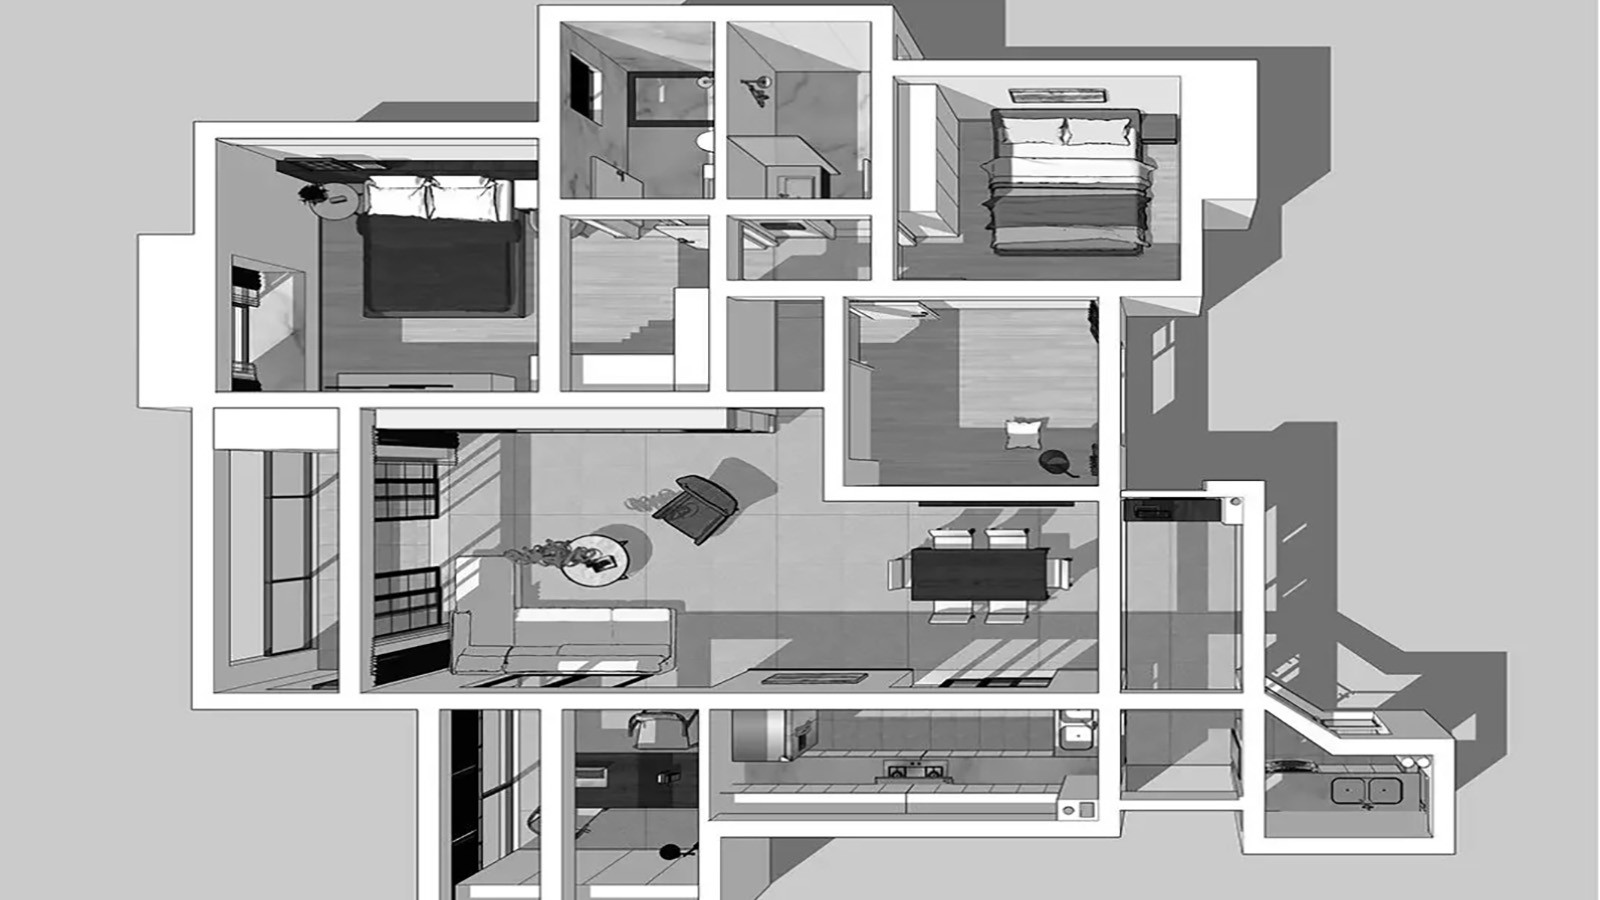 112现代两房装修效果图,优美的室内环境。装修案例效果图-美广网